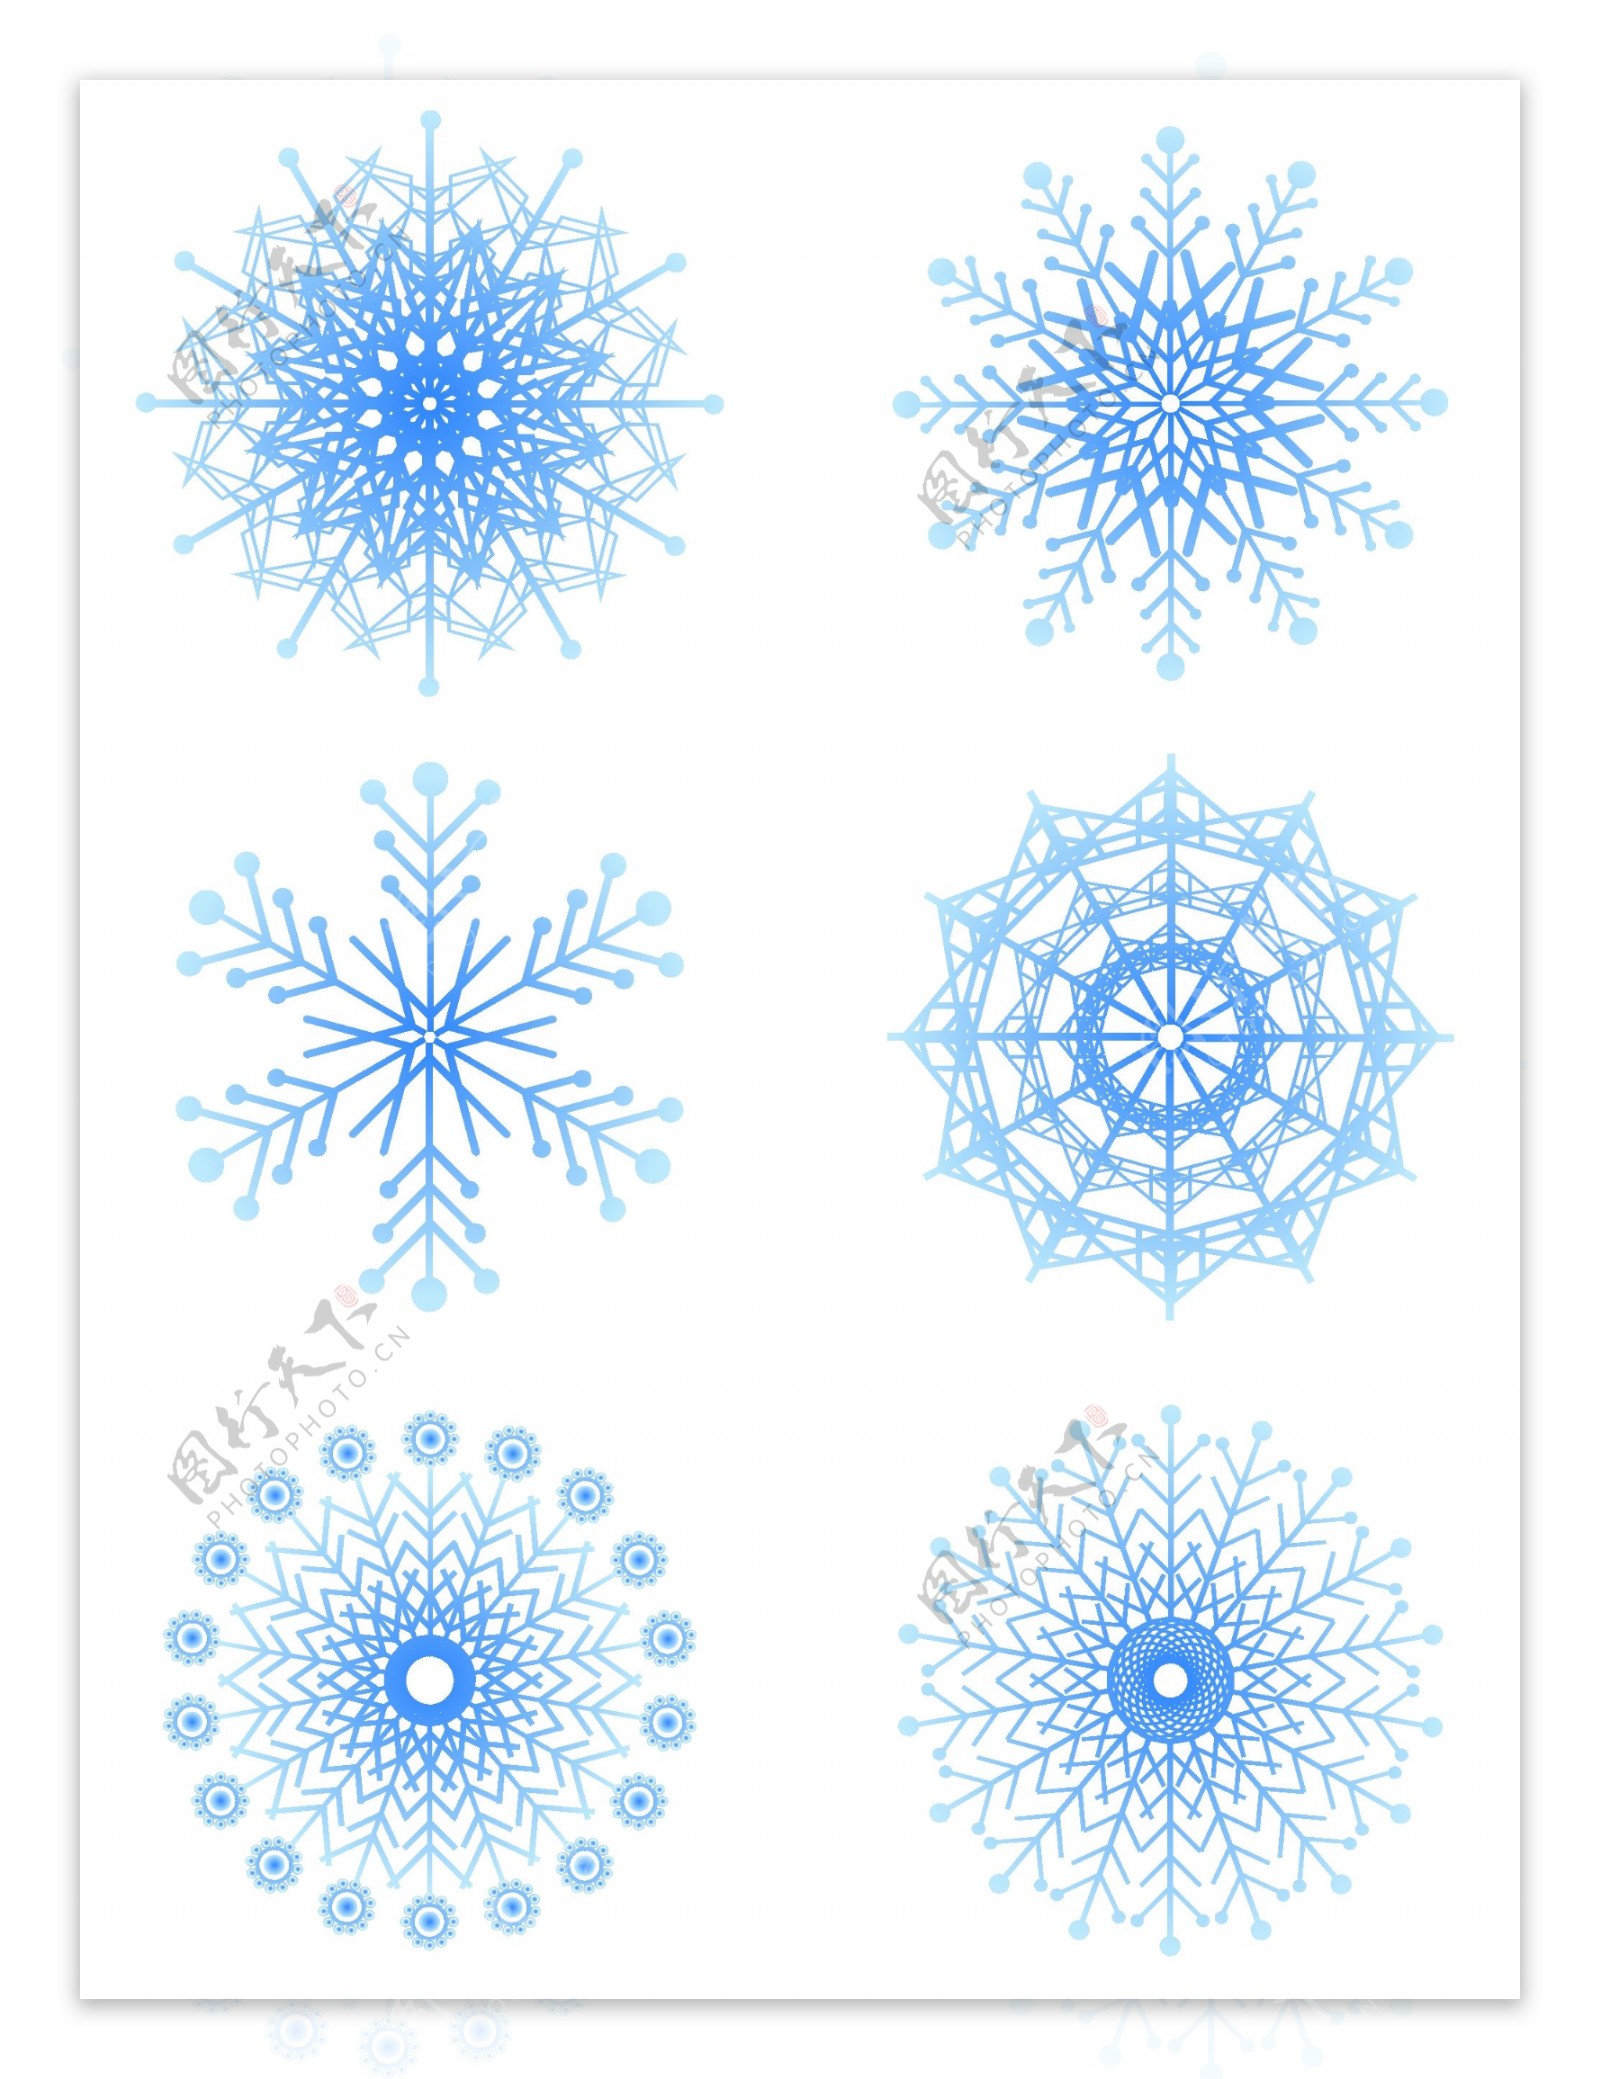 原创矢量旋转雪花渐变蓝装饰设计元素